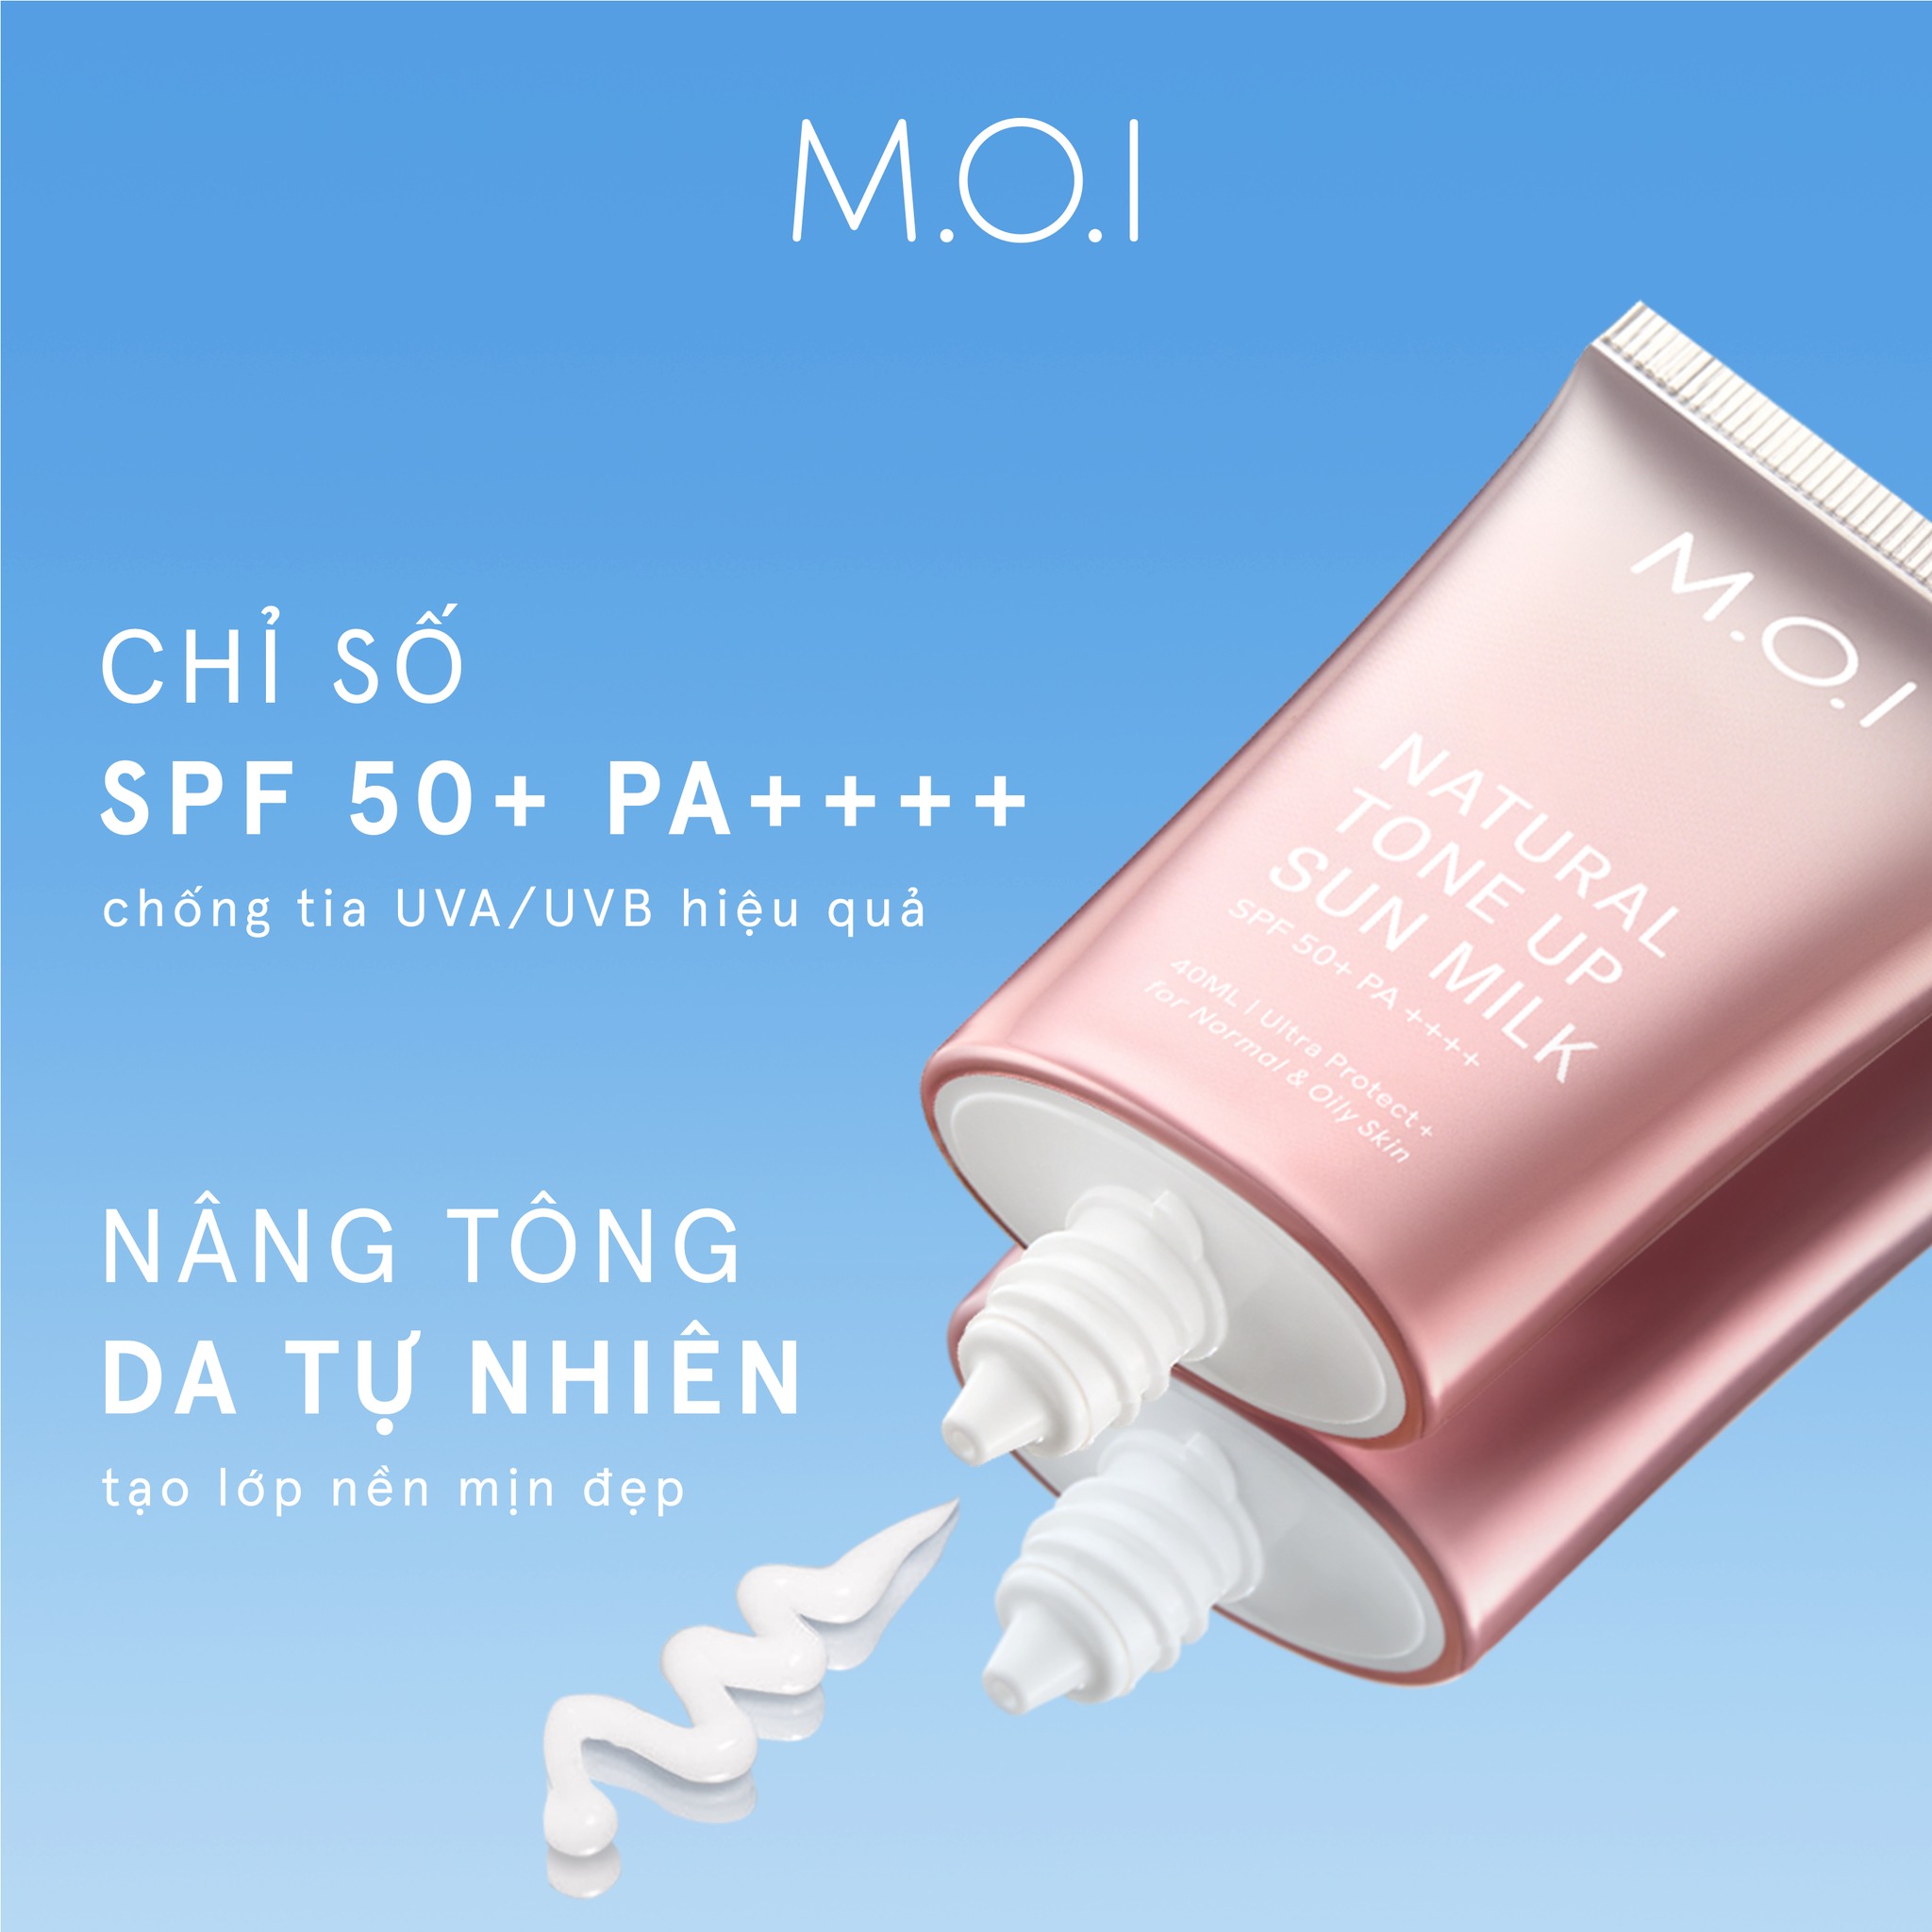 Kem chống nắng Nâng tông M.O.I Natural Tone Up Sun Milk 40ml